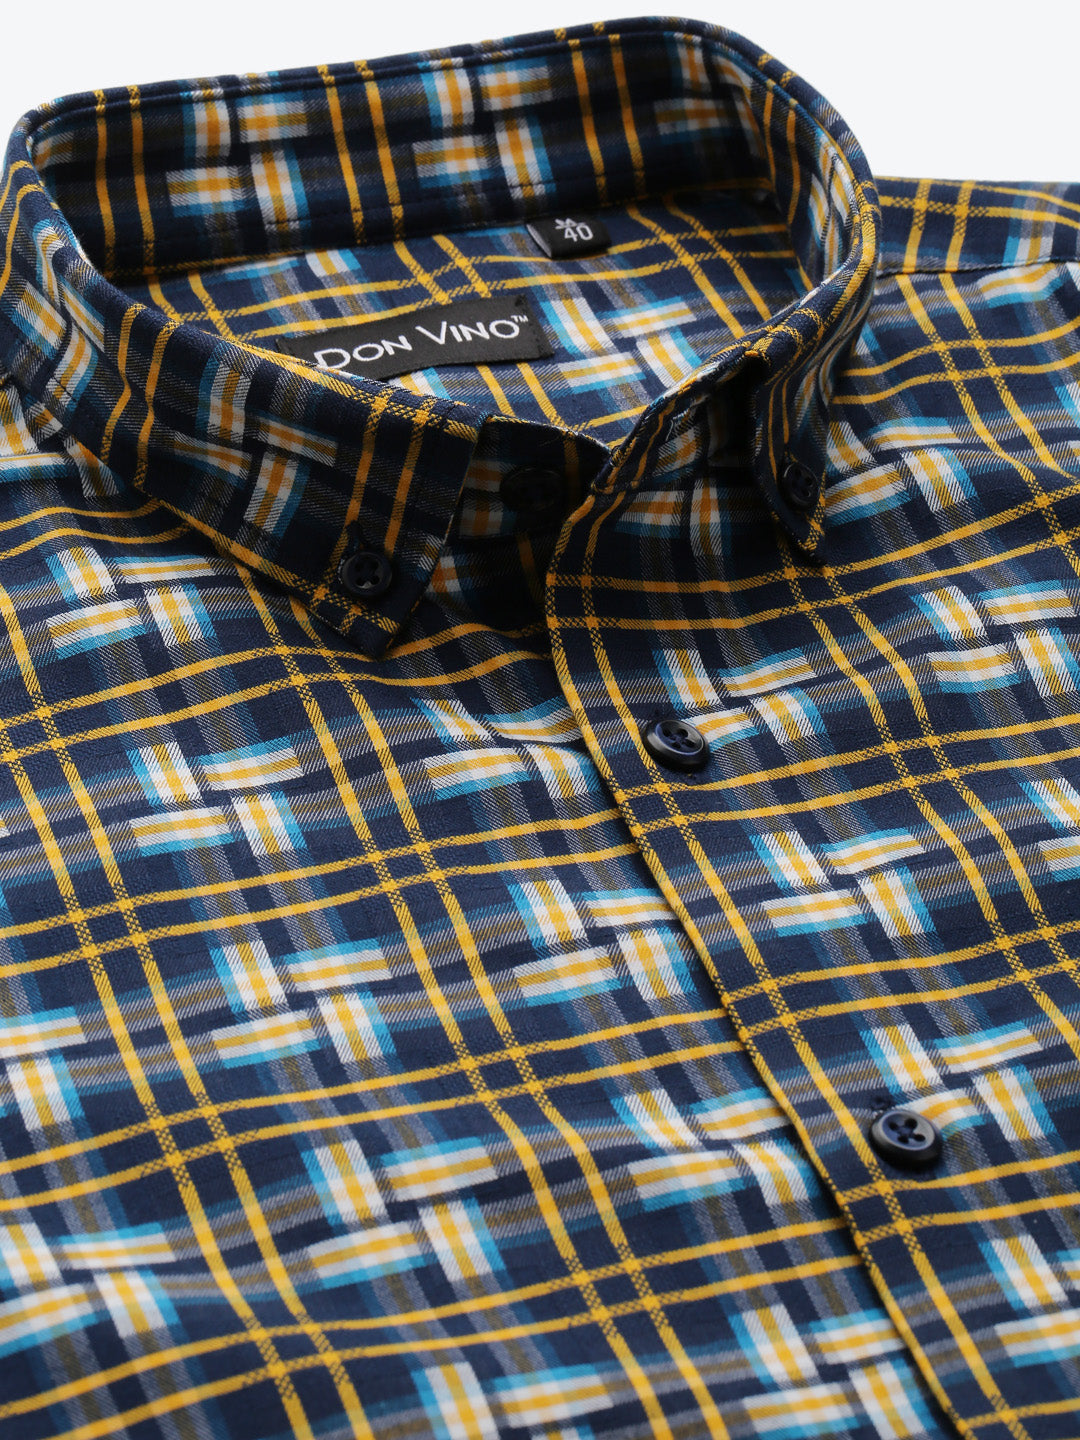 Don Vino Multi Coloured Small Checks Full Sleeves Shirt For Men